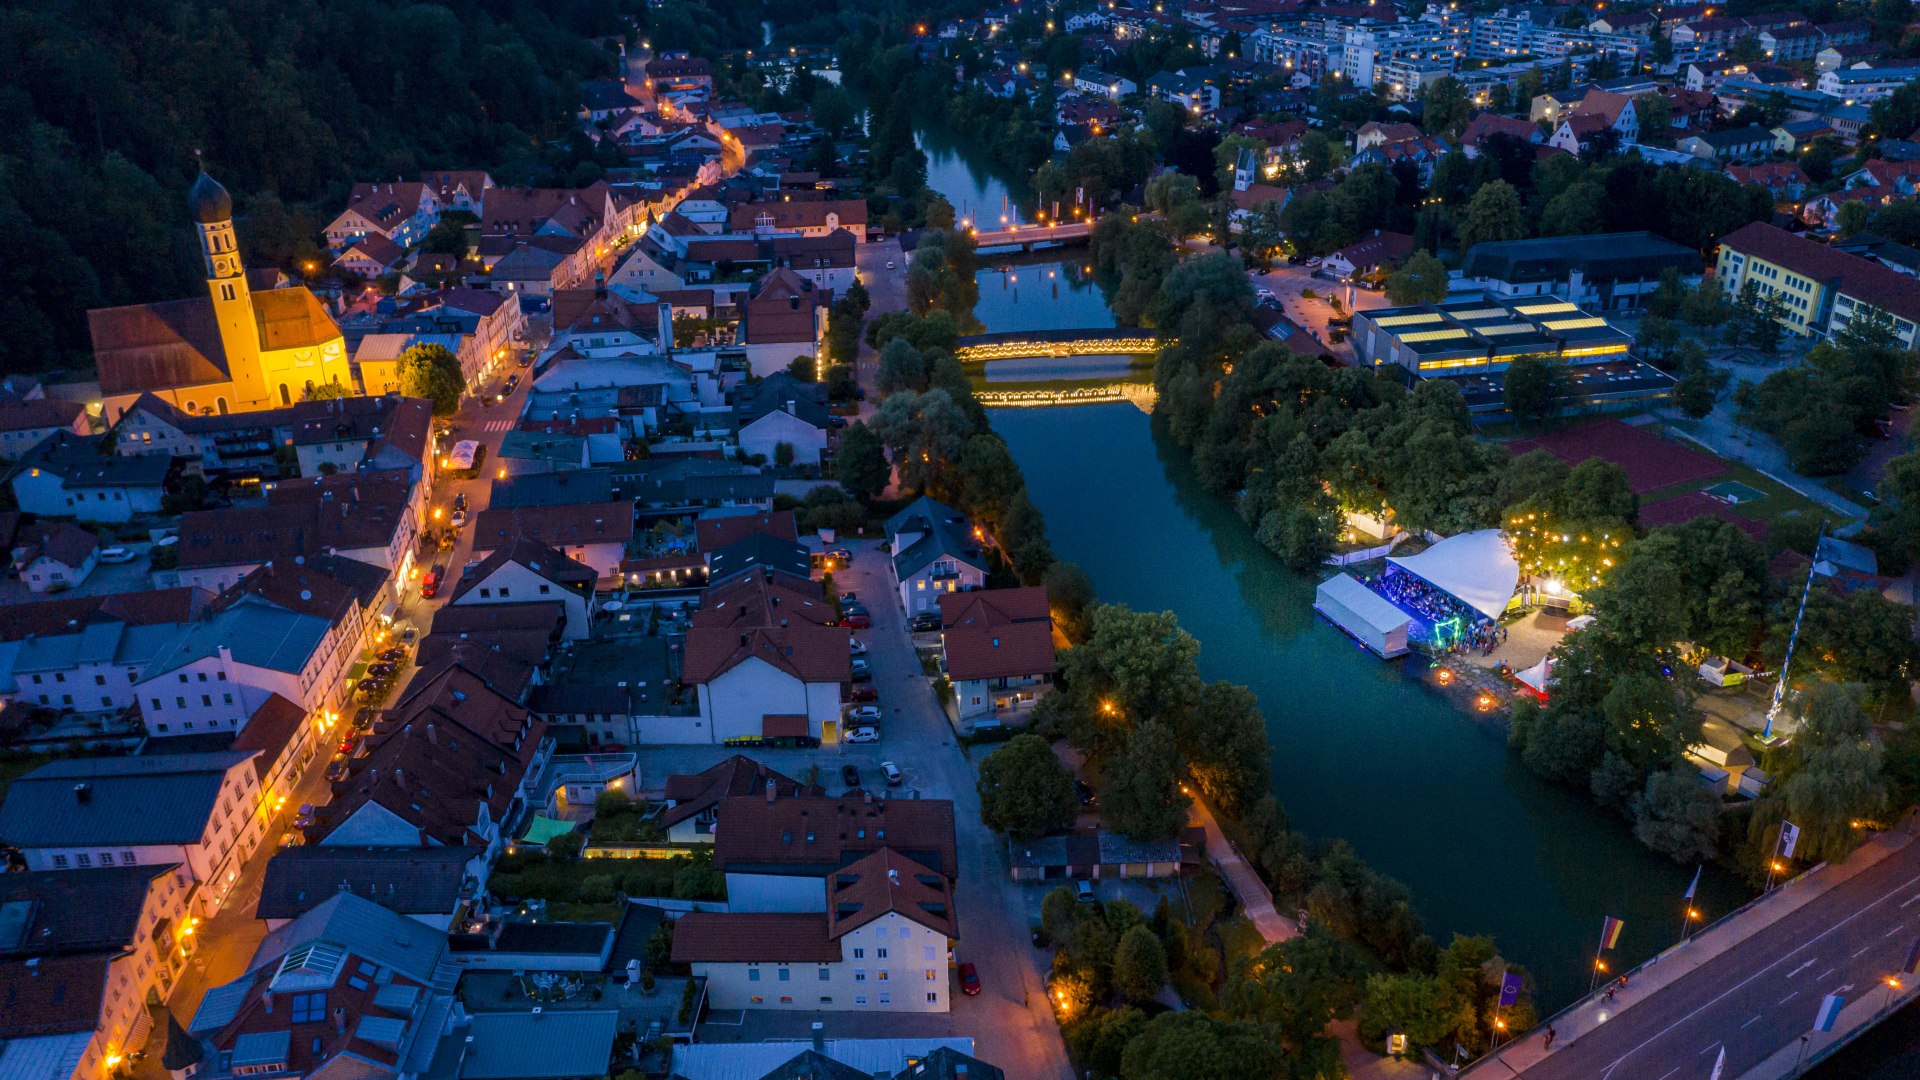 Die Alte Floßlände - Fluss Festival 2019 bei Nacht, © Adrian Greiter